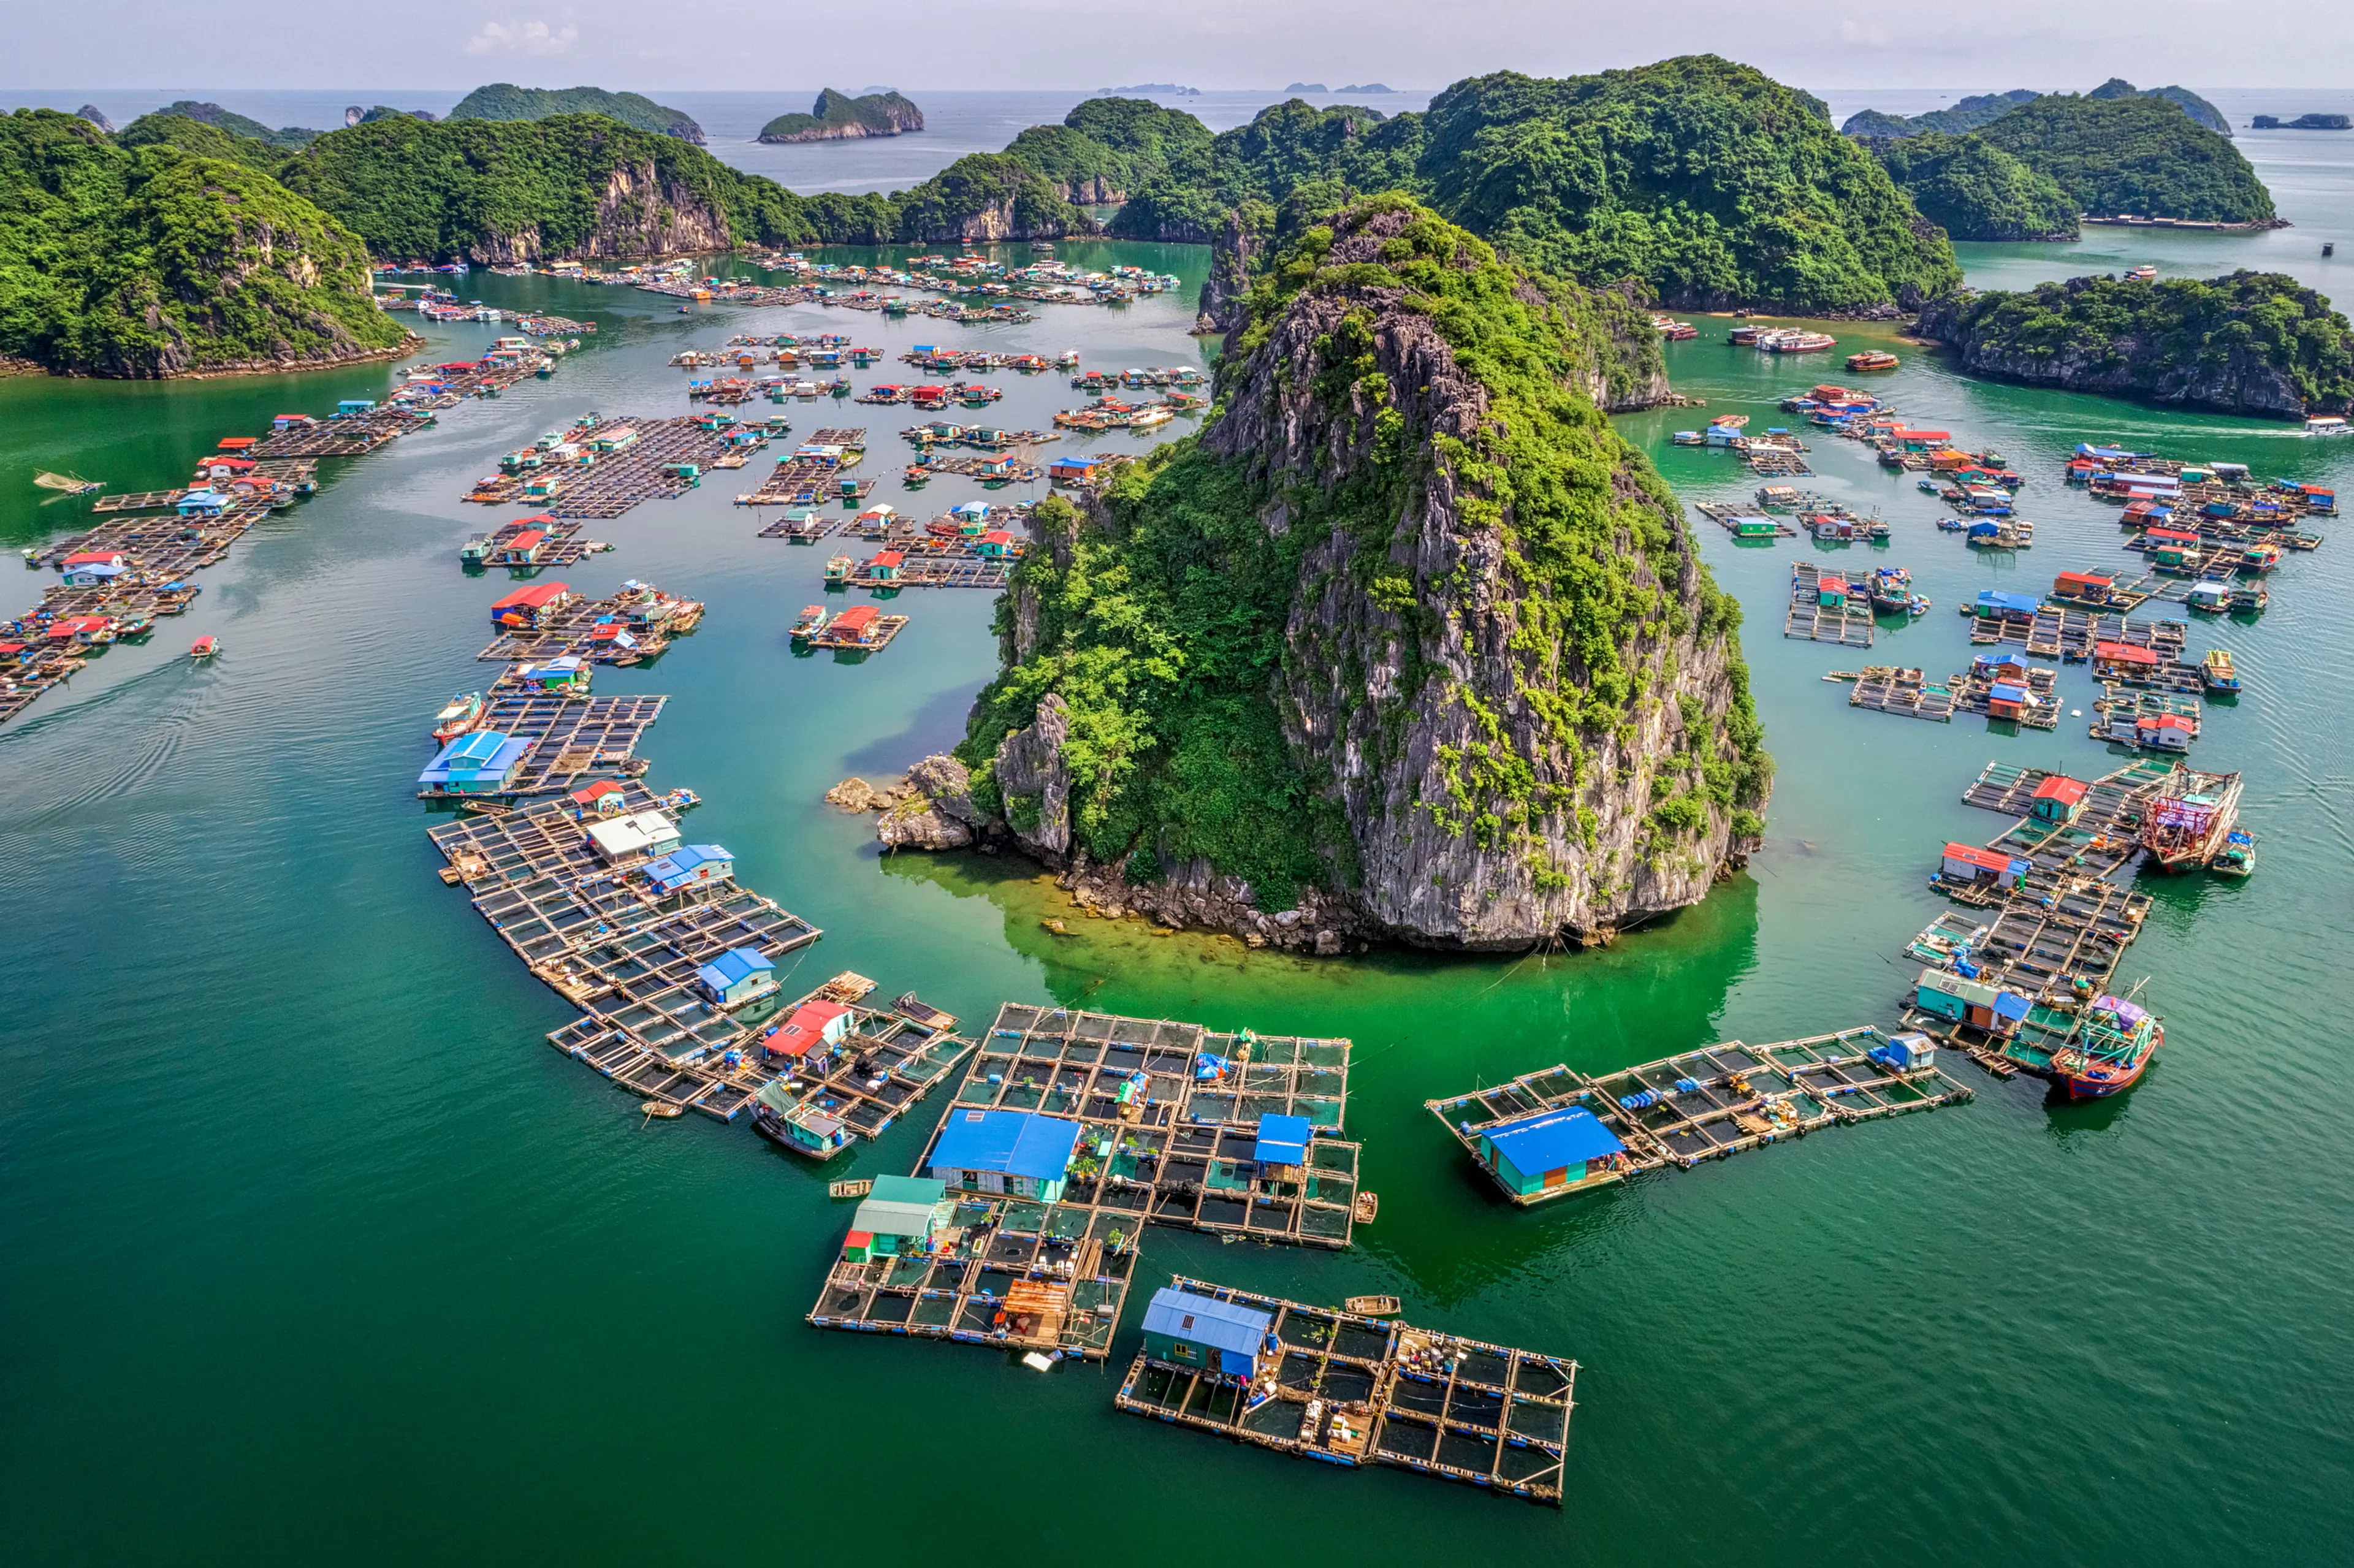 Floating fishing village in Lan Ha bay